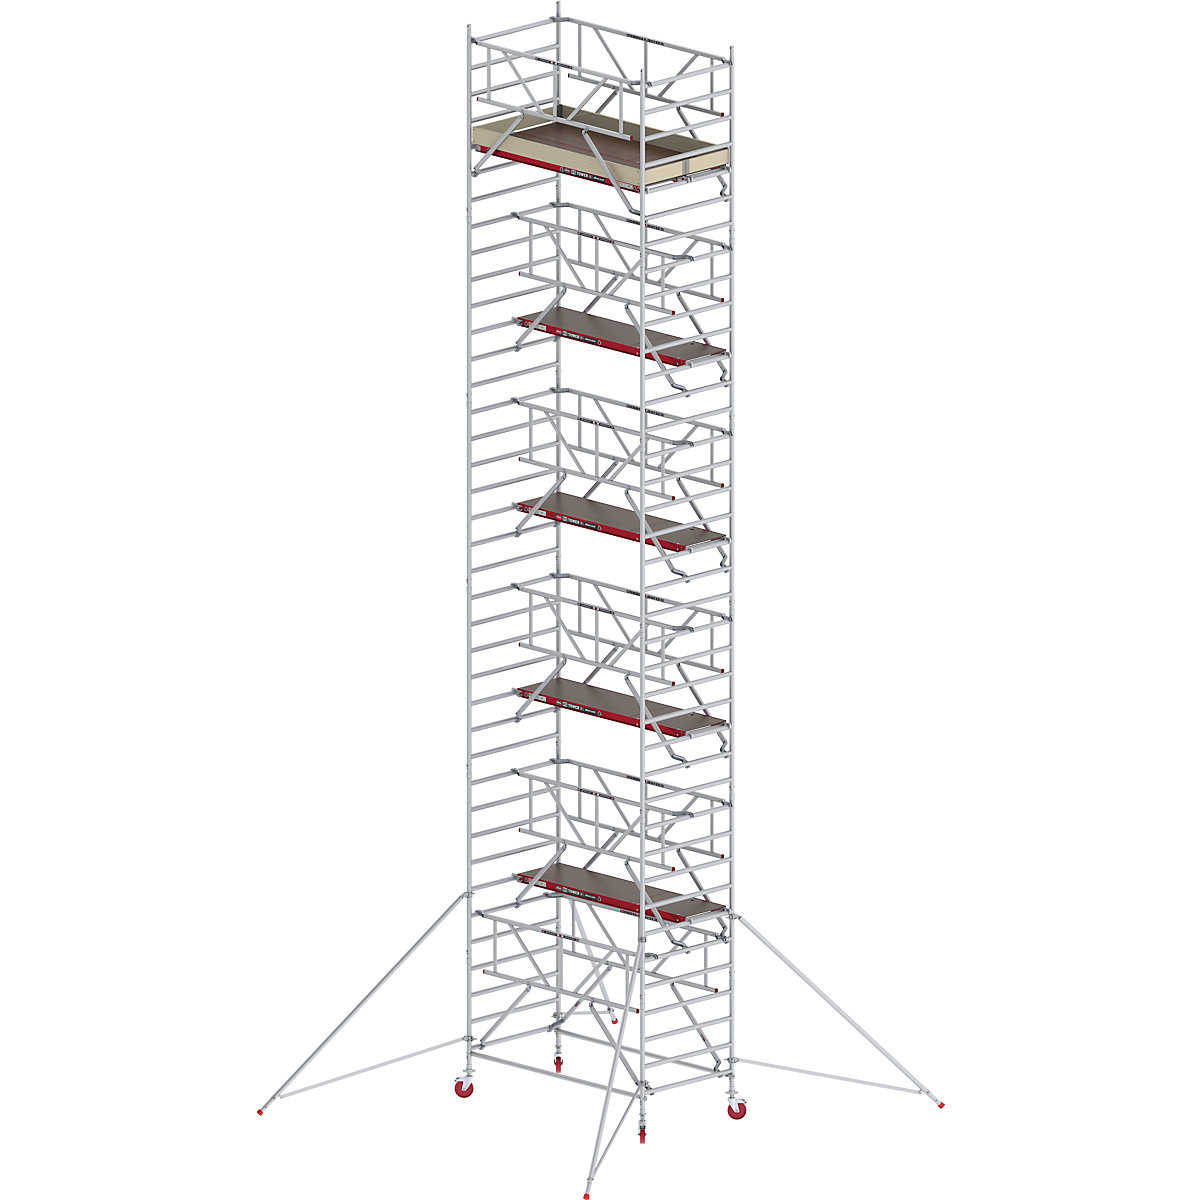 Trabattello mobile RS TOWER 42 largo con Safe-Quick® – Altrex, piattaforma in legno, lunghezza 2,45 m, altezza di lavoro 12,2 m-4